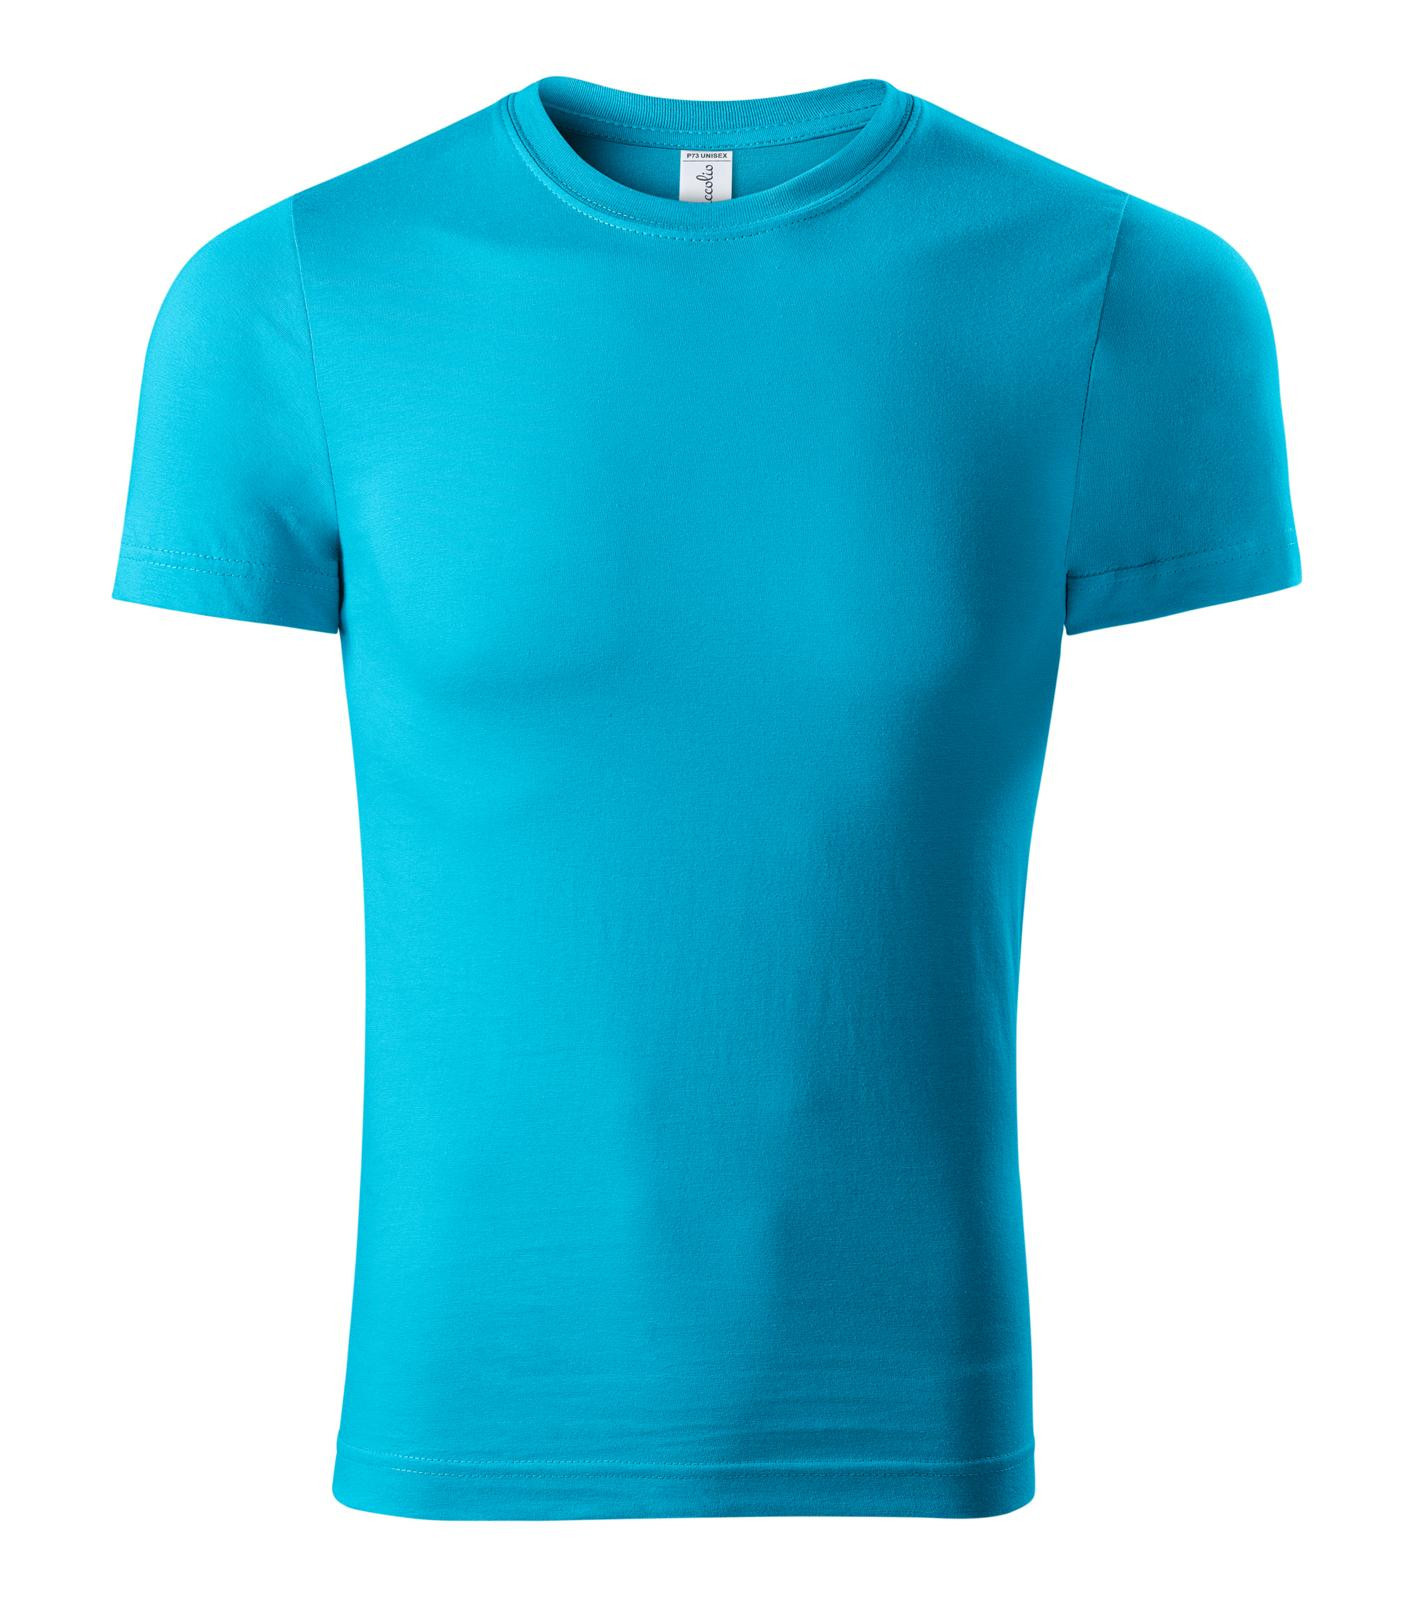 Unisex tričko Piccolio Paint P73 - veľkosť: 4XL, farba: tyrkysová